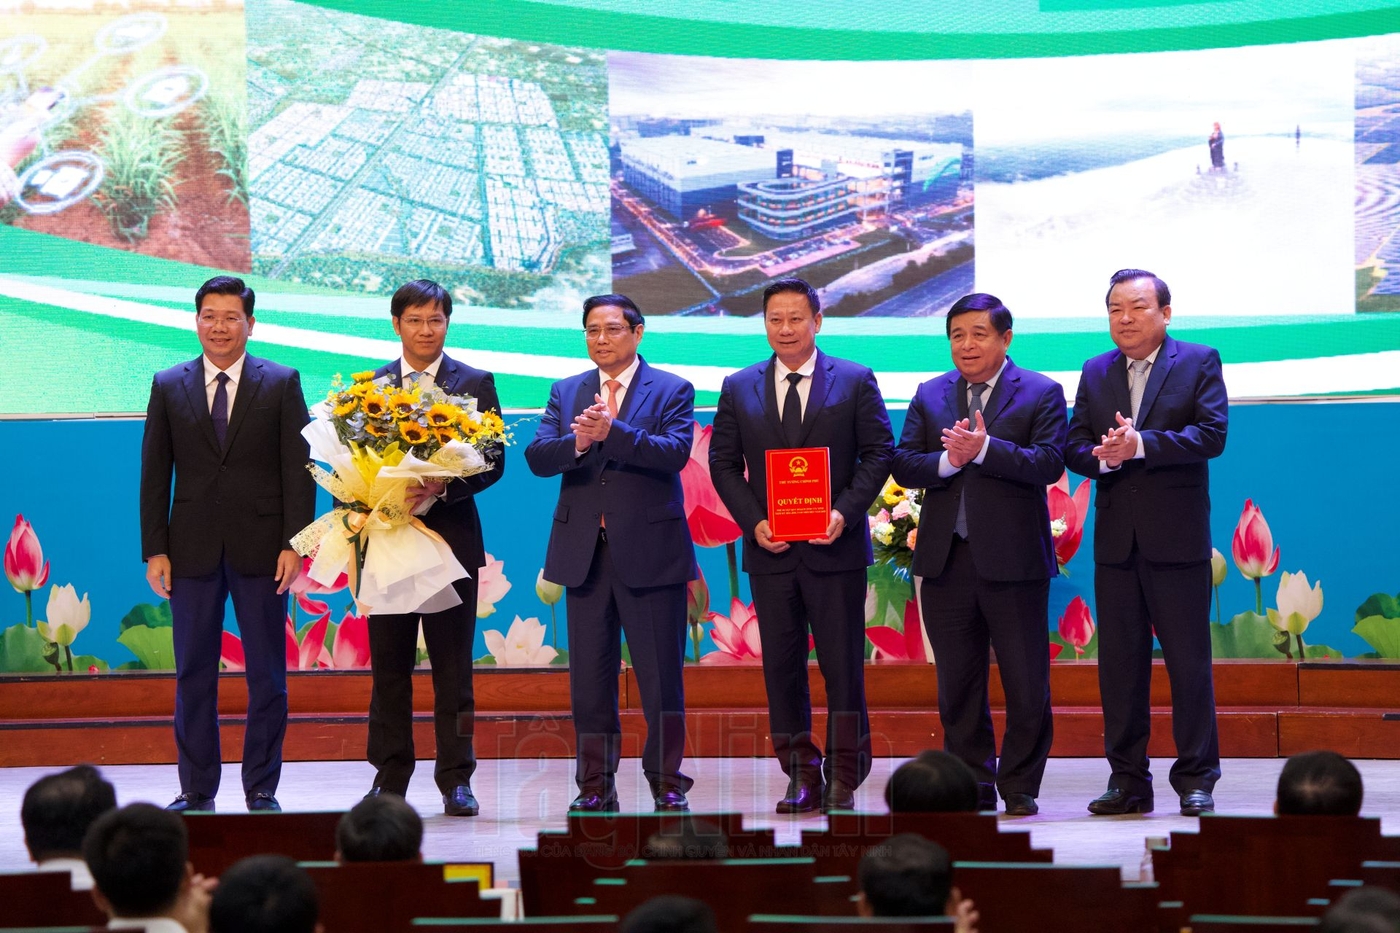 Thủ tướng Chính phủ Phạm Minh Chính tặng hoa chúc mừng tỉnh Tây Ninh và chụp hình lưu niệm cùng lãnh đạo Tỉnh ủy, UBND tỉnh.
